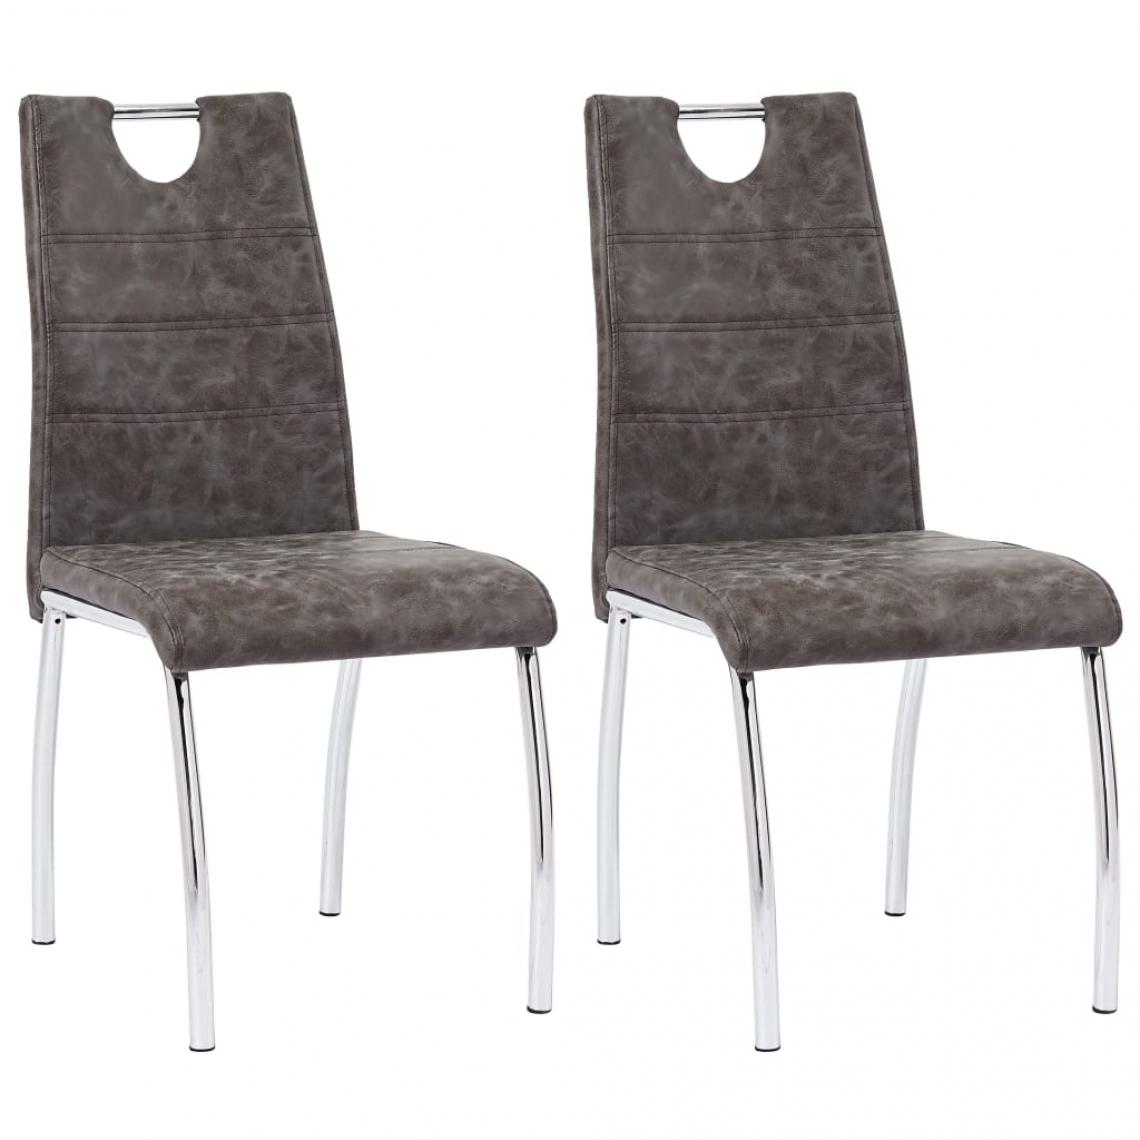 Decoshop26 - Lot de 2 chaises de salle à manger cuisine design contemporain similicuir marron CDS020719 - Chaises